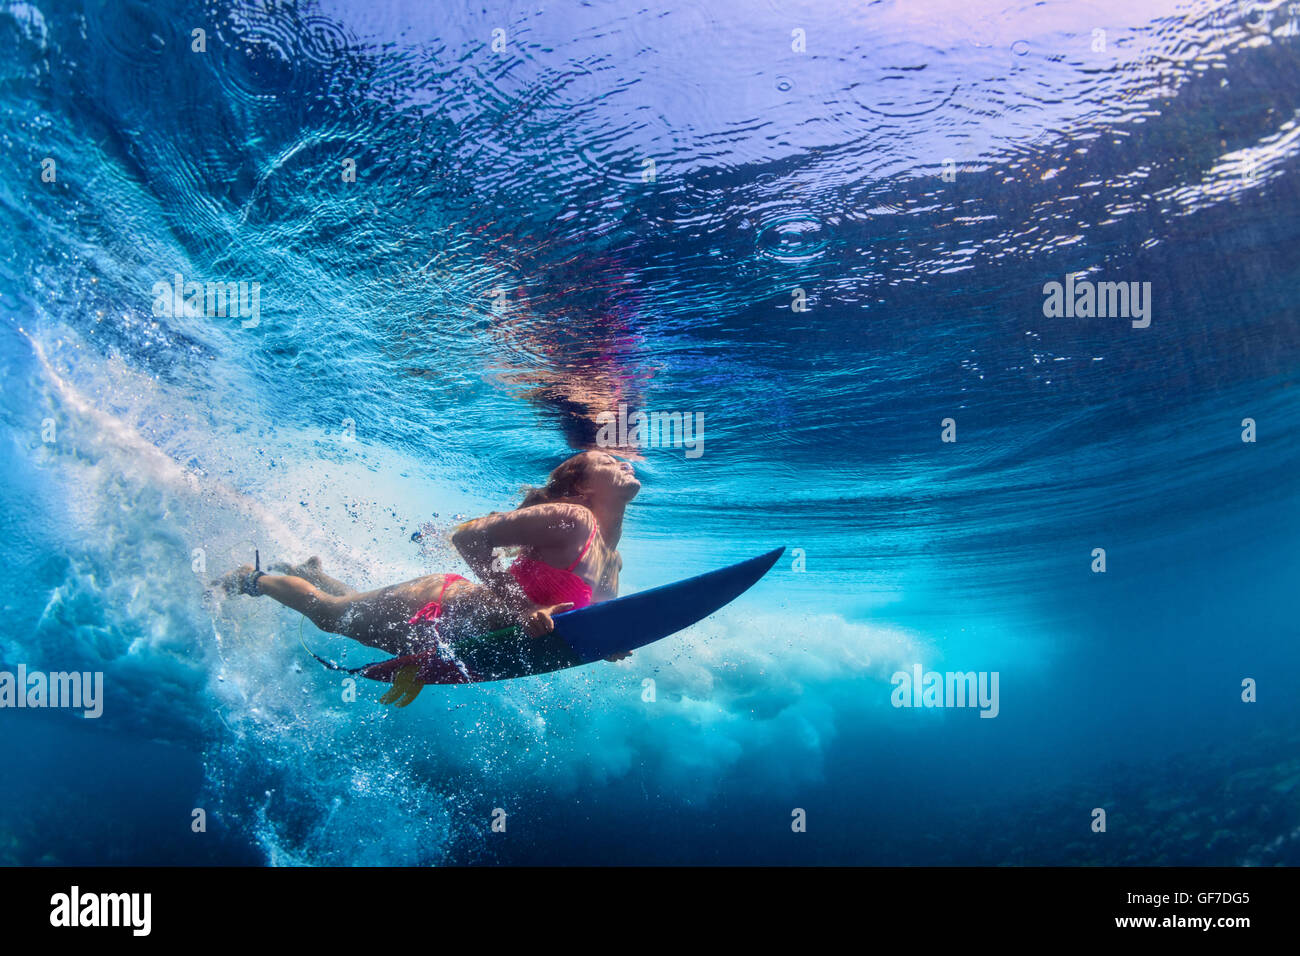 Activa joven vestida de bikini en acción - surfer con surf buceo en submarinos gran ola del océano atlántico. Foto de stock